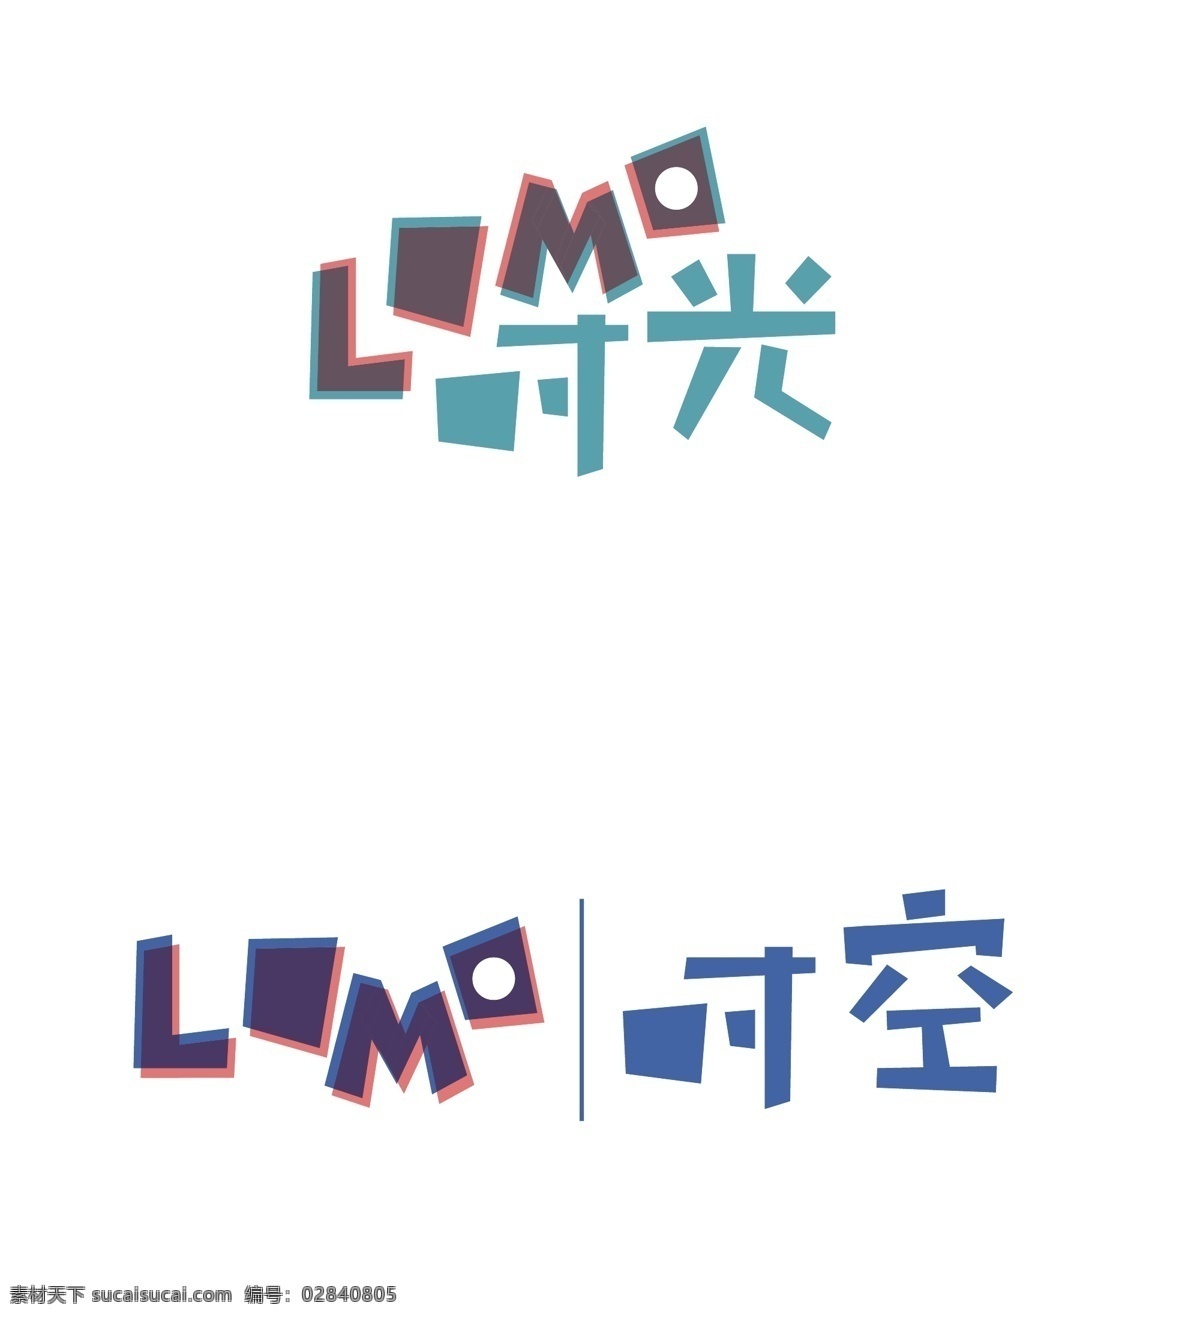 lomo 时光 丨 时空 童趣 标志 卡通 灵动 灵活 小清新 清新 蓝色 logo